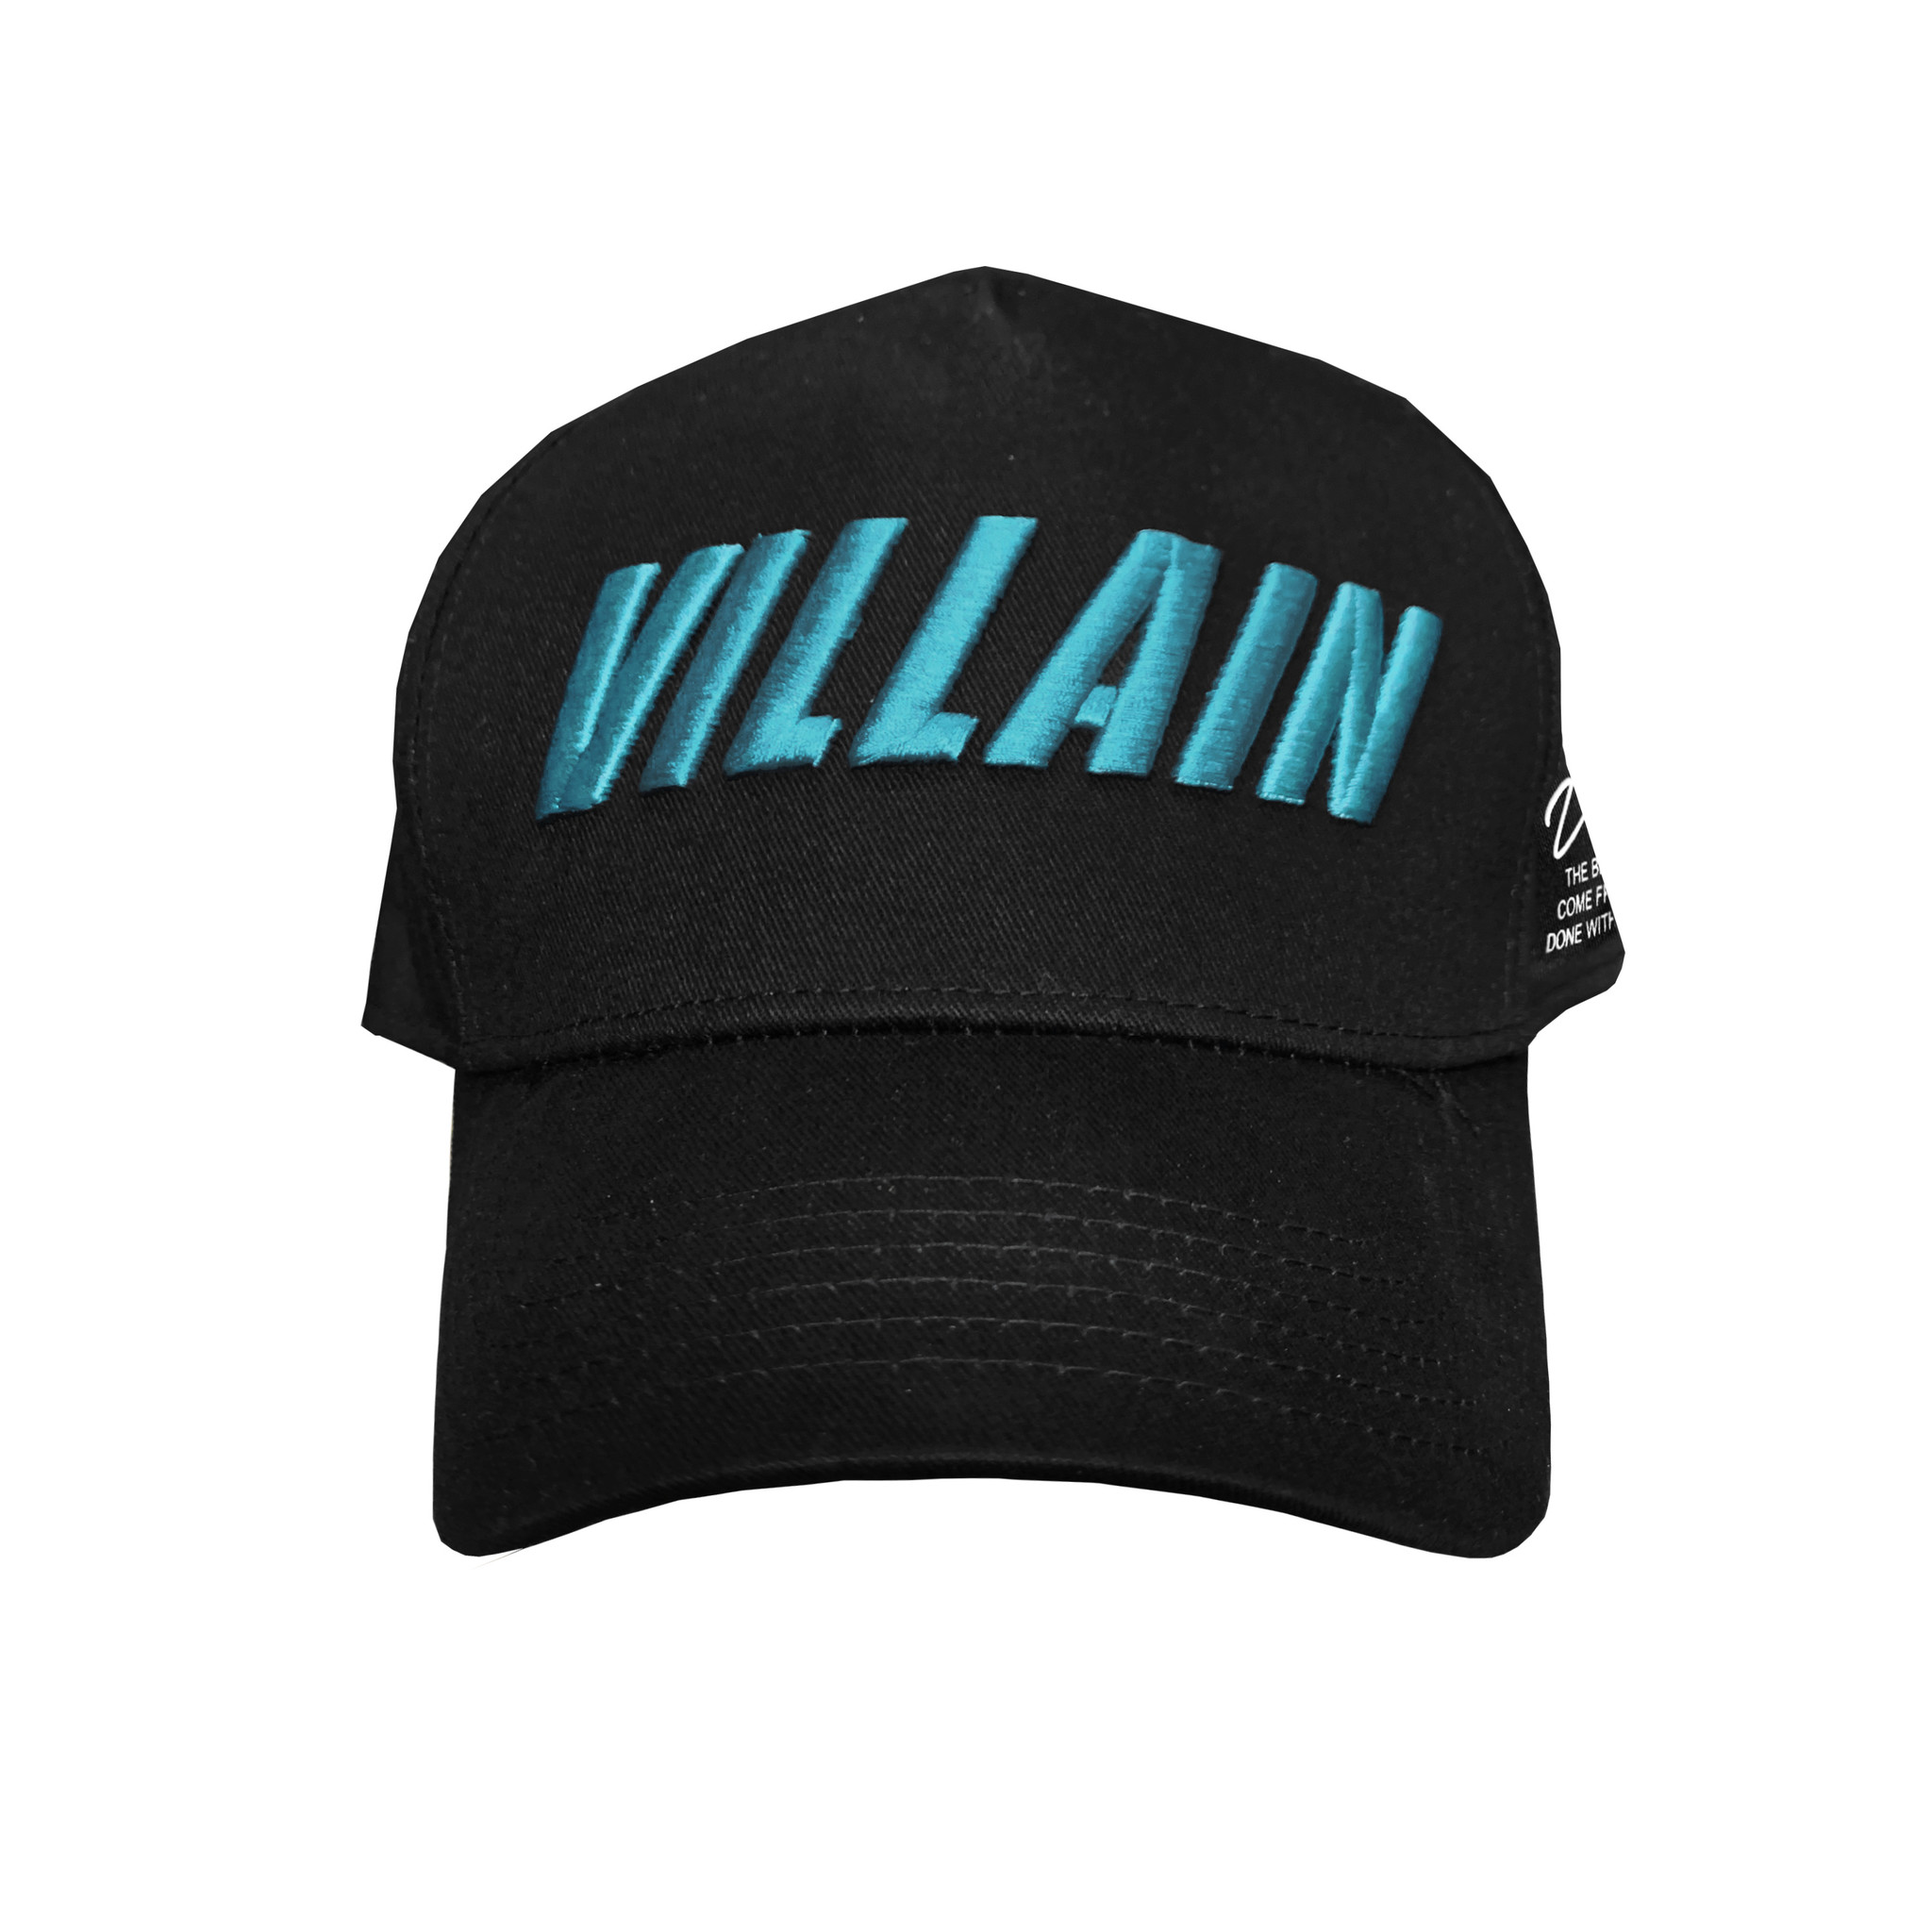 Villain Villain Cap - Turquoise - Hardstyle.com